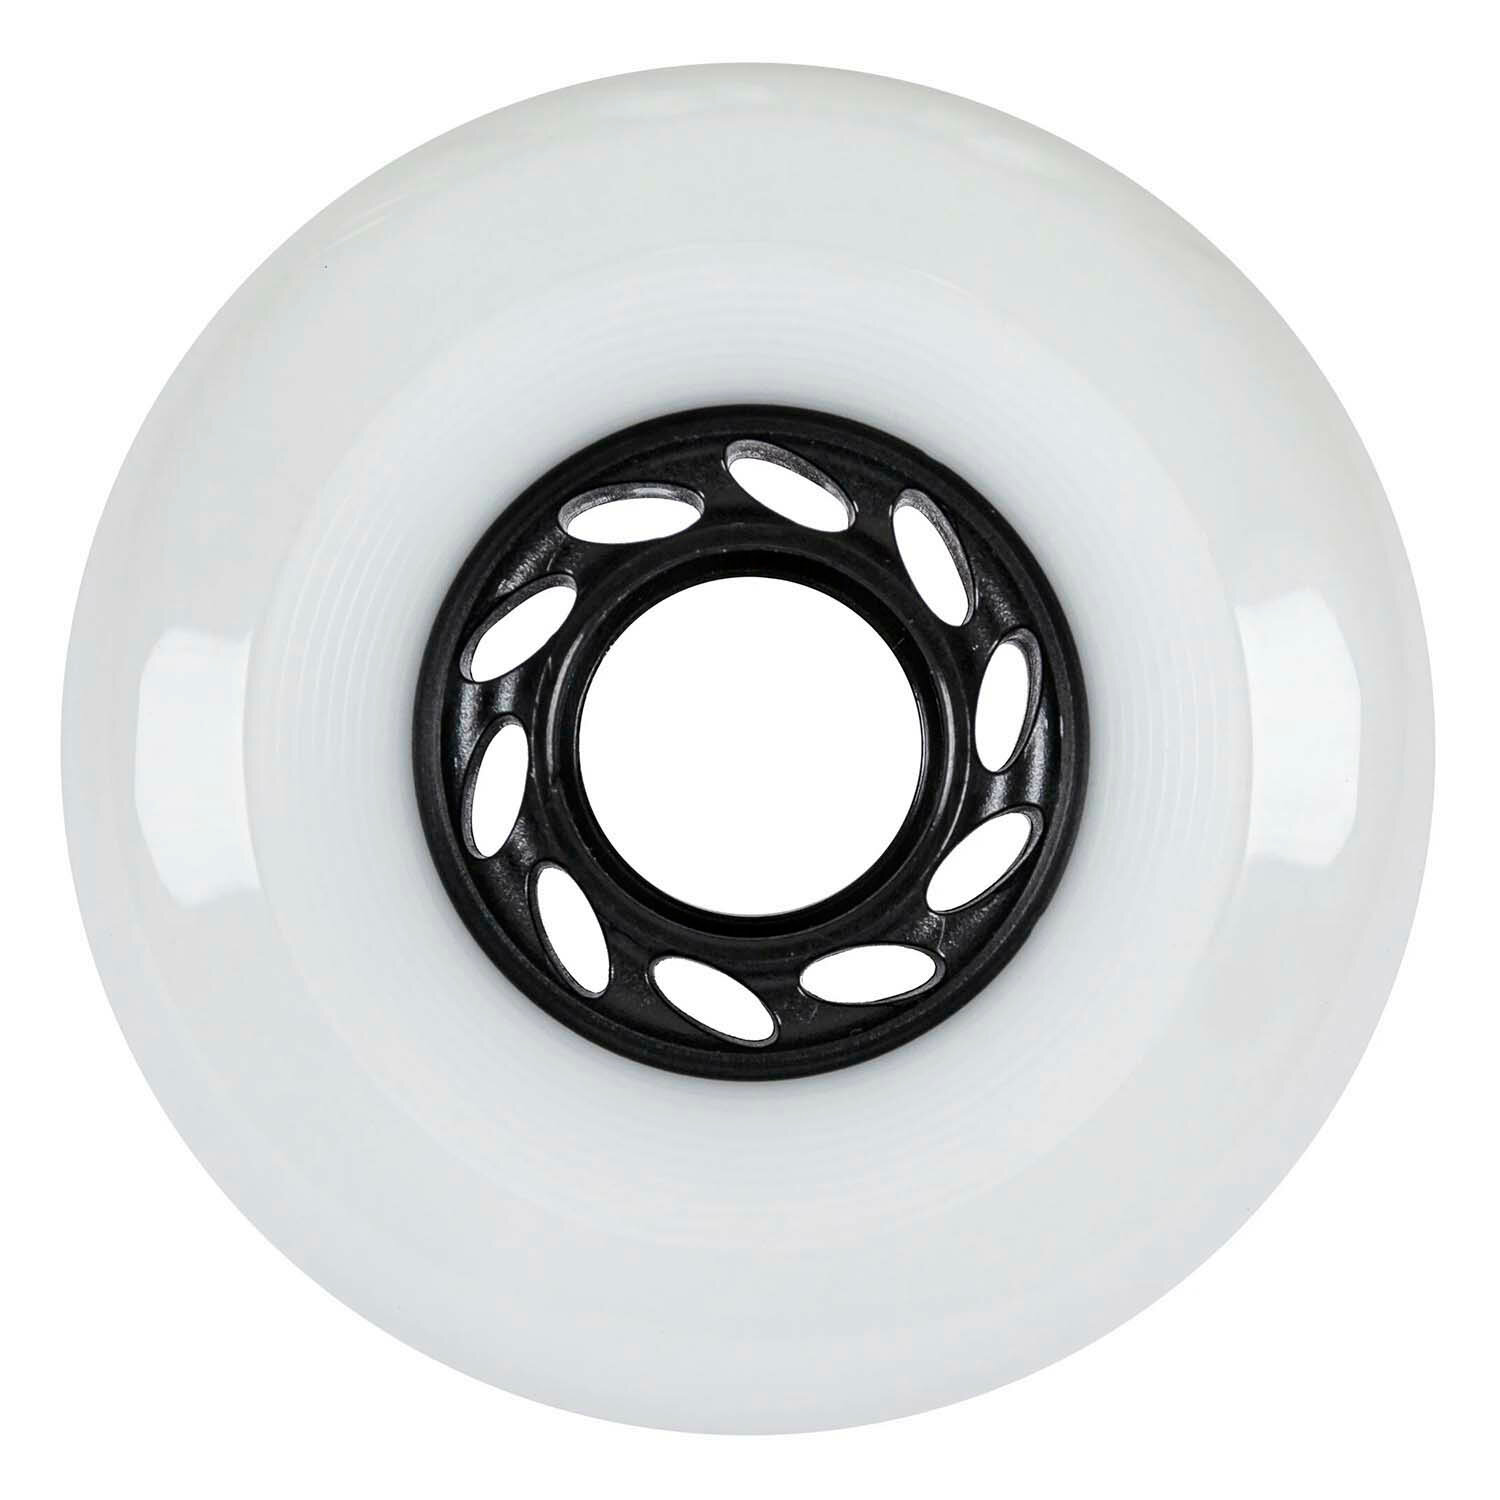 Комплект колёс для роликов Powerslide Spinner 80/88A, 4-pack Black/White